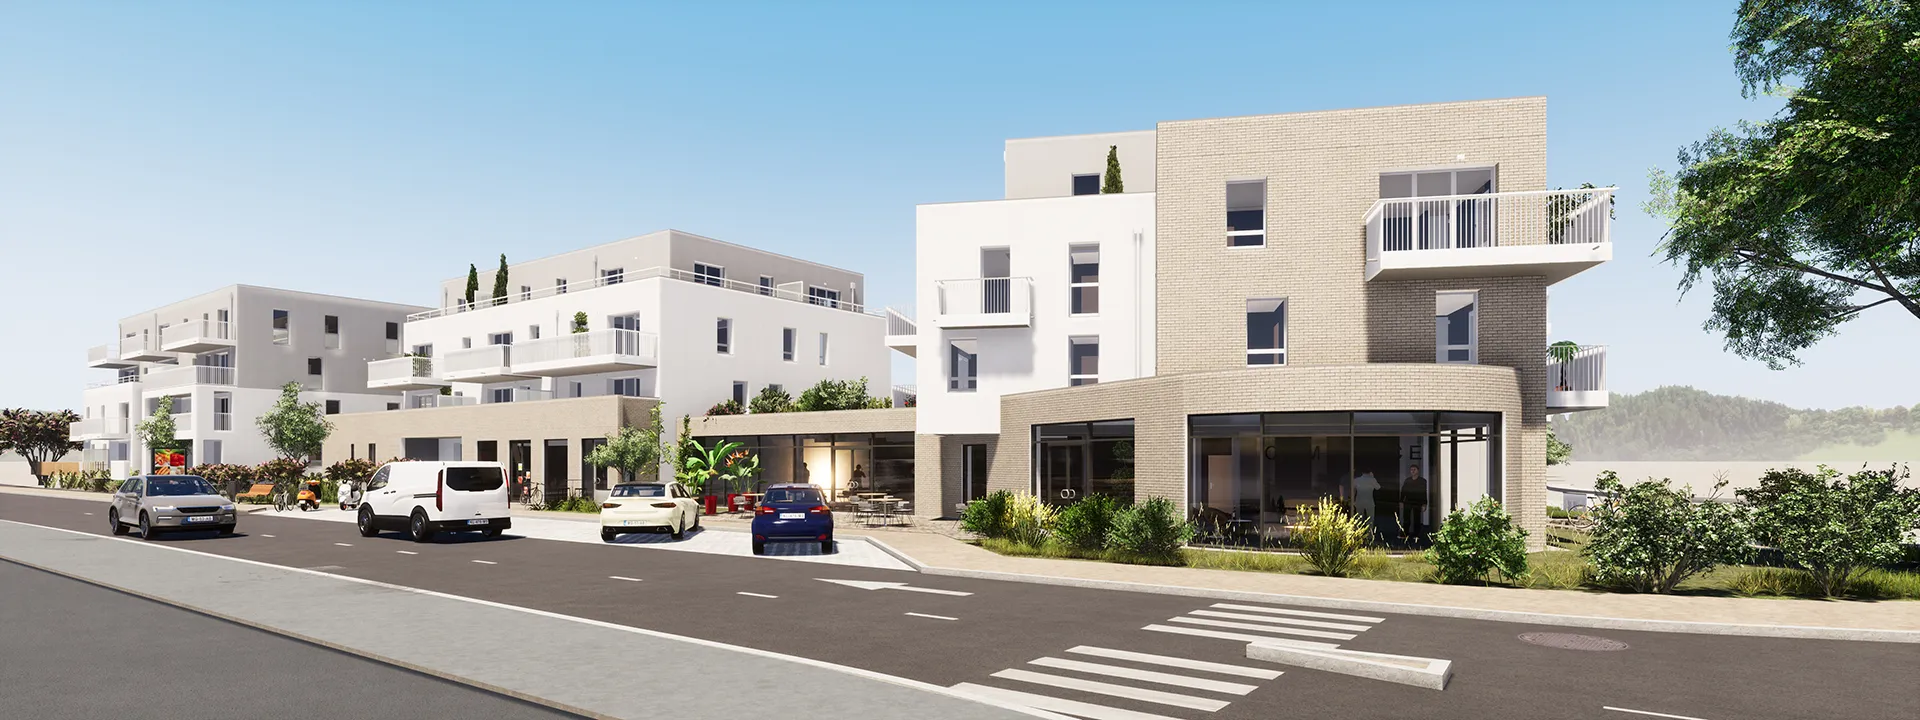 Programme immobilier neuf Saint-Nazaire à 300m de la zone de l'Immaculée